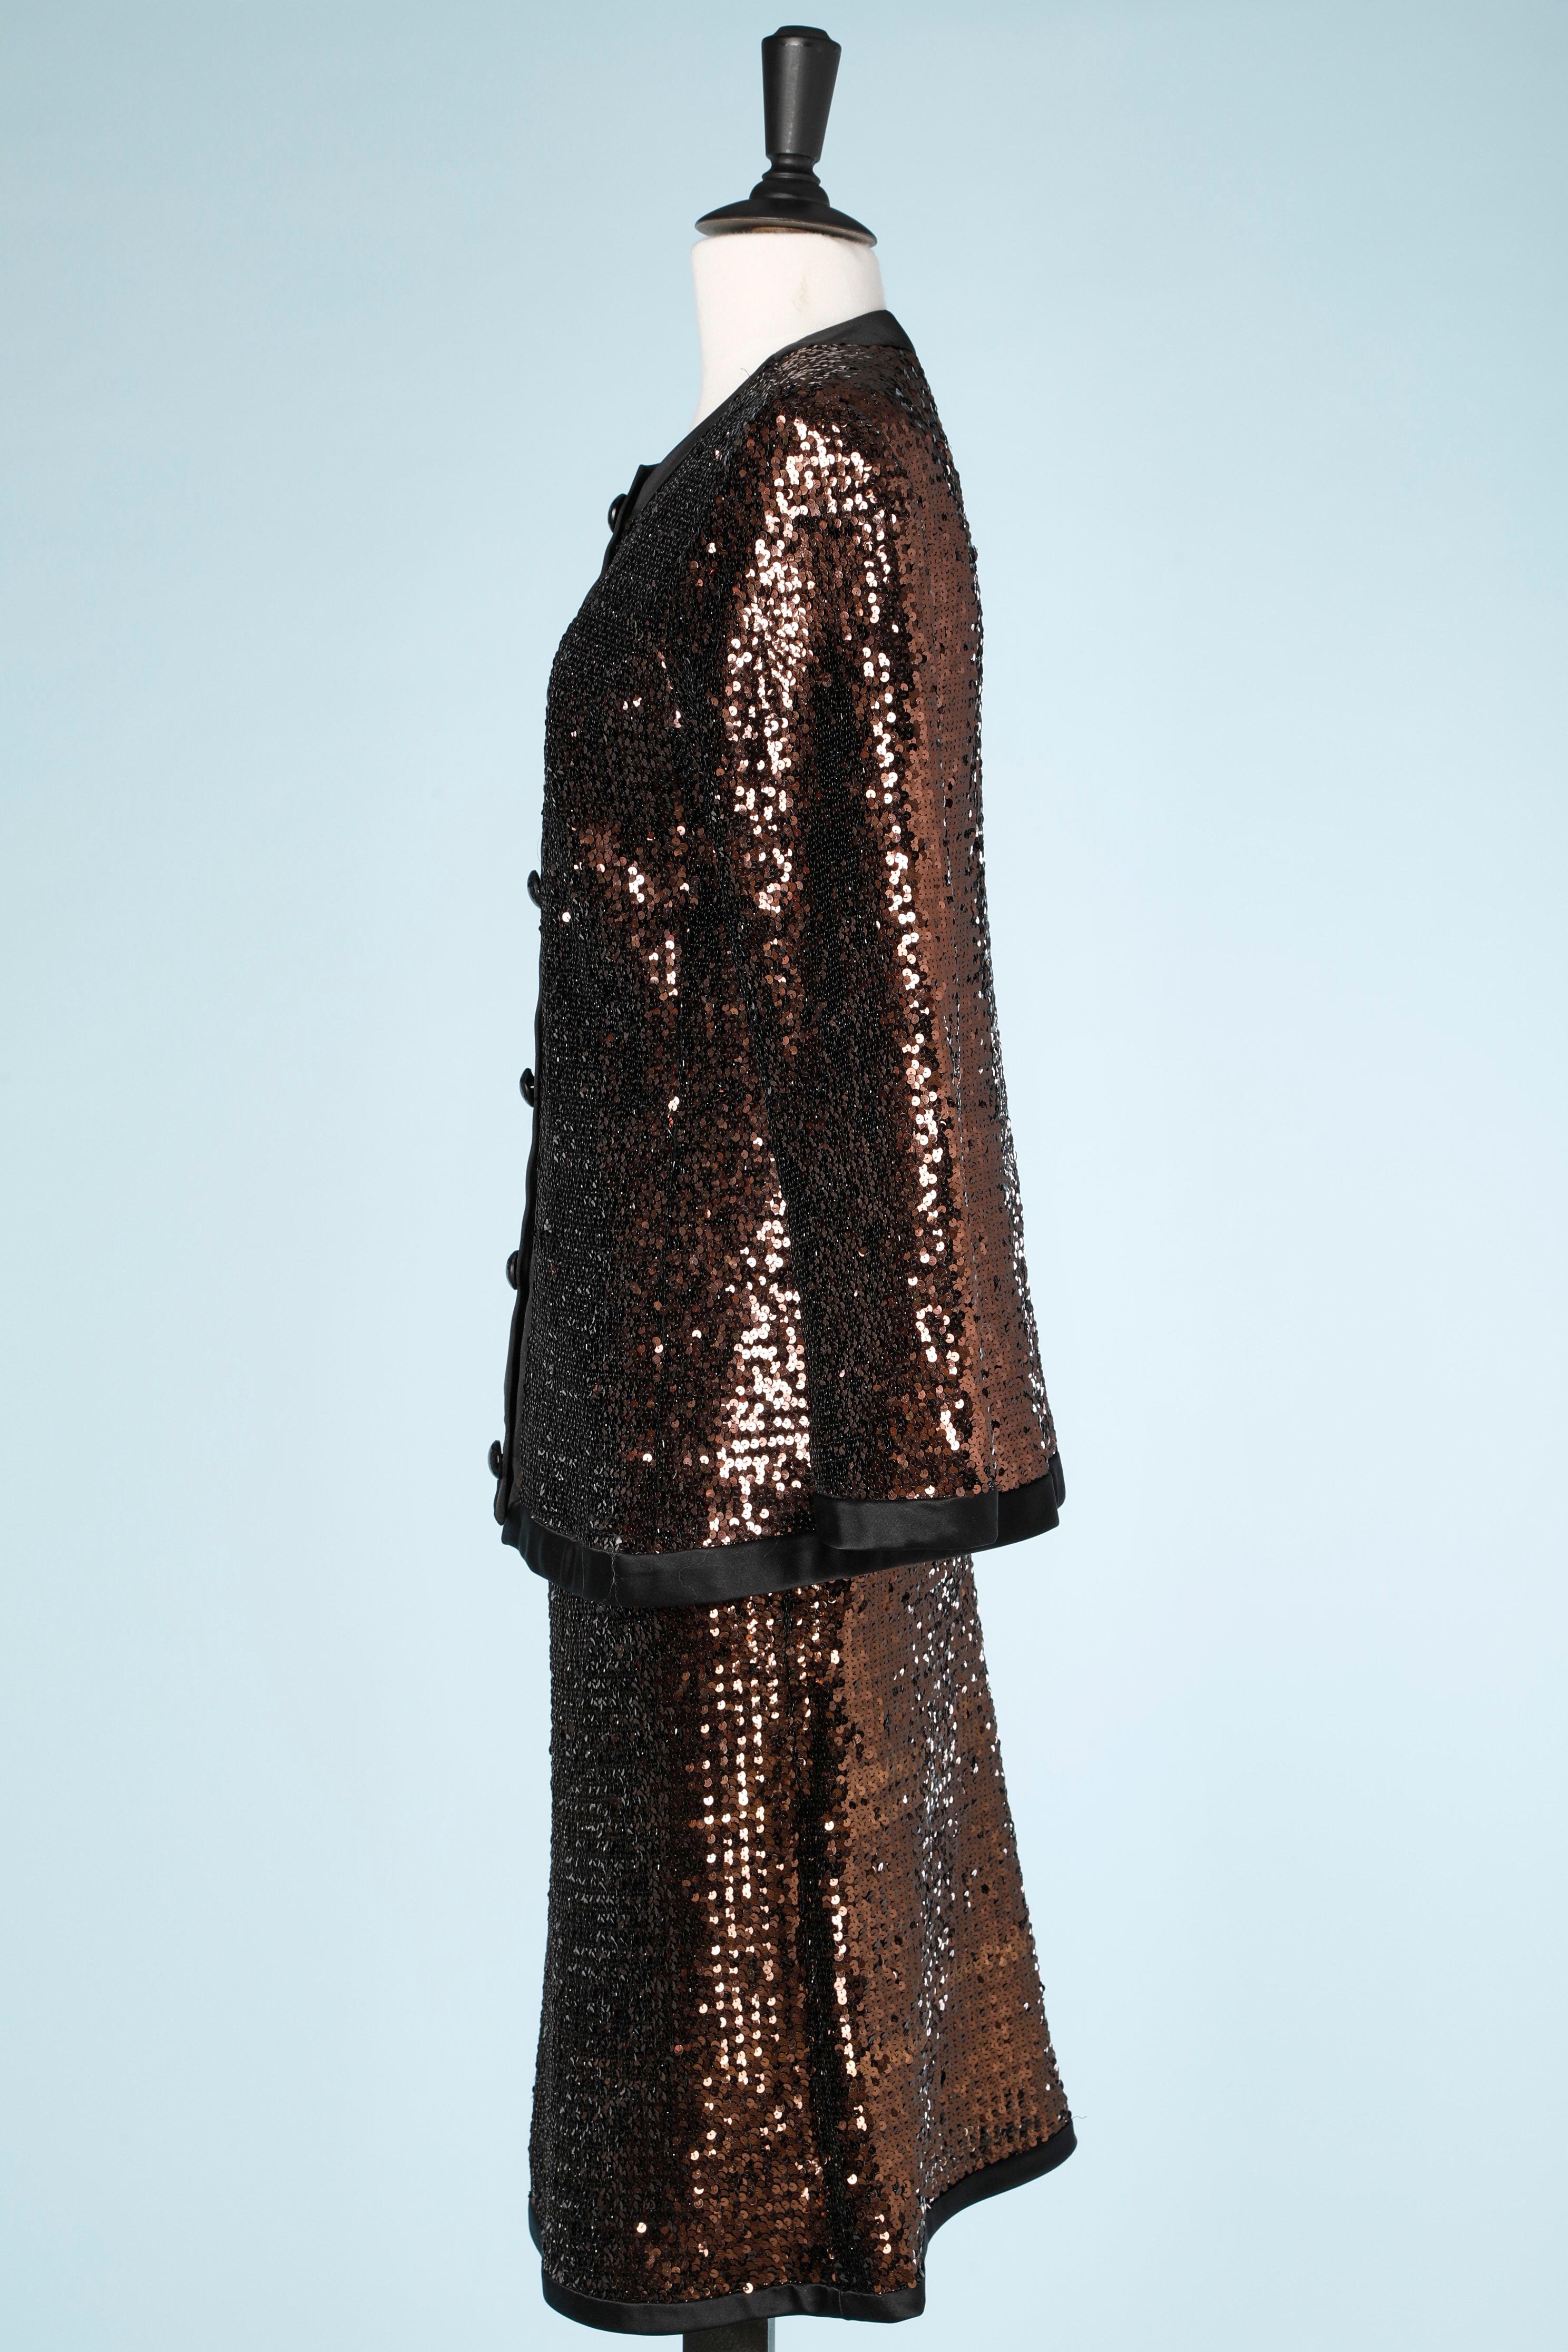 Yves Saint Laurent Rive Gauche copper sequins Skirt suit  For Sale 1